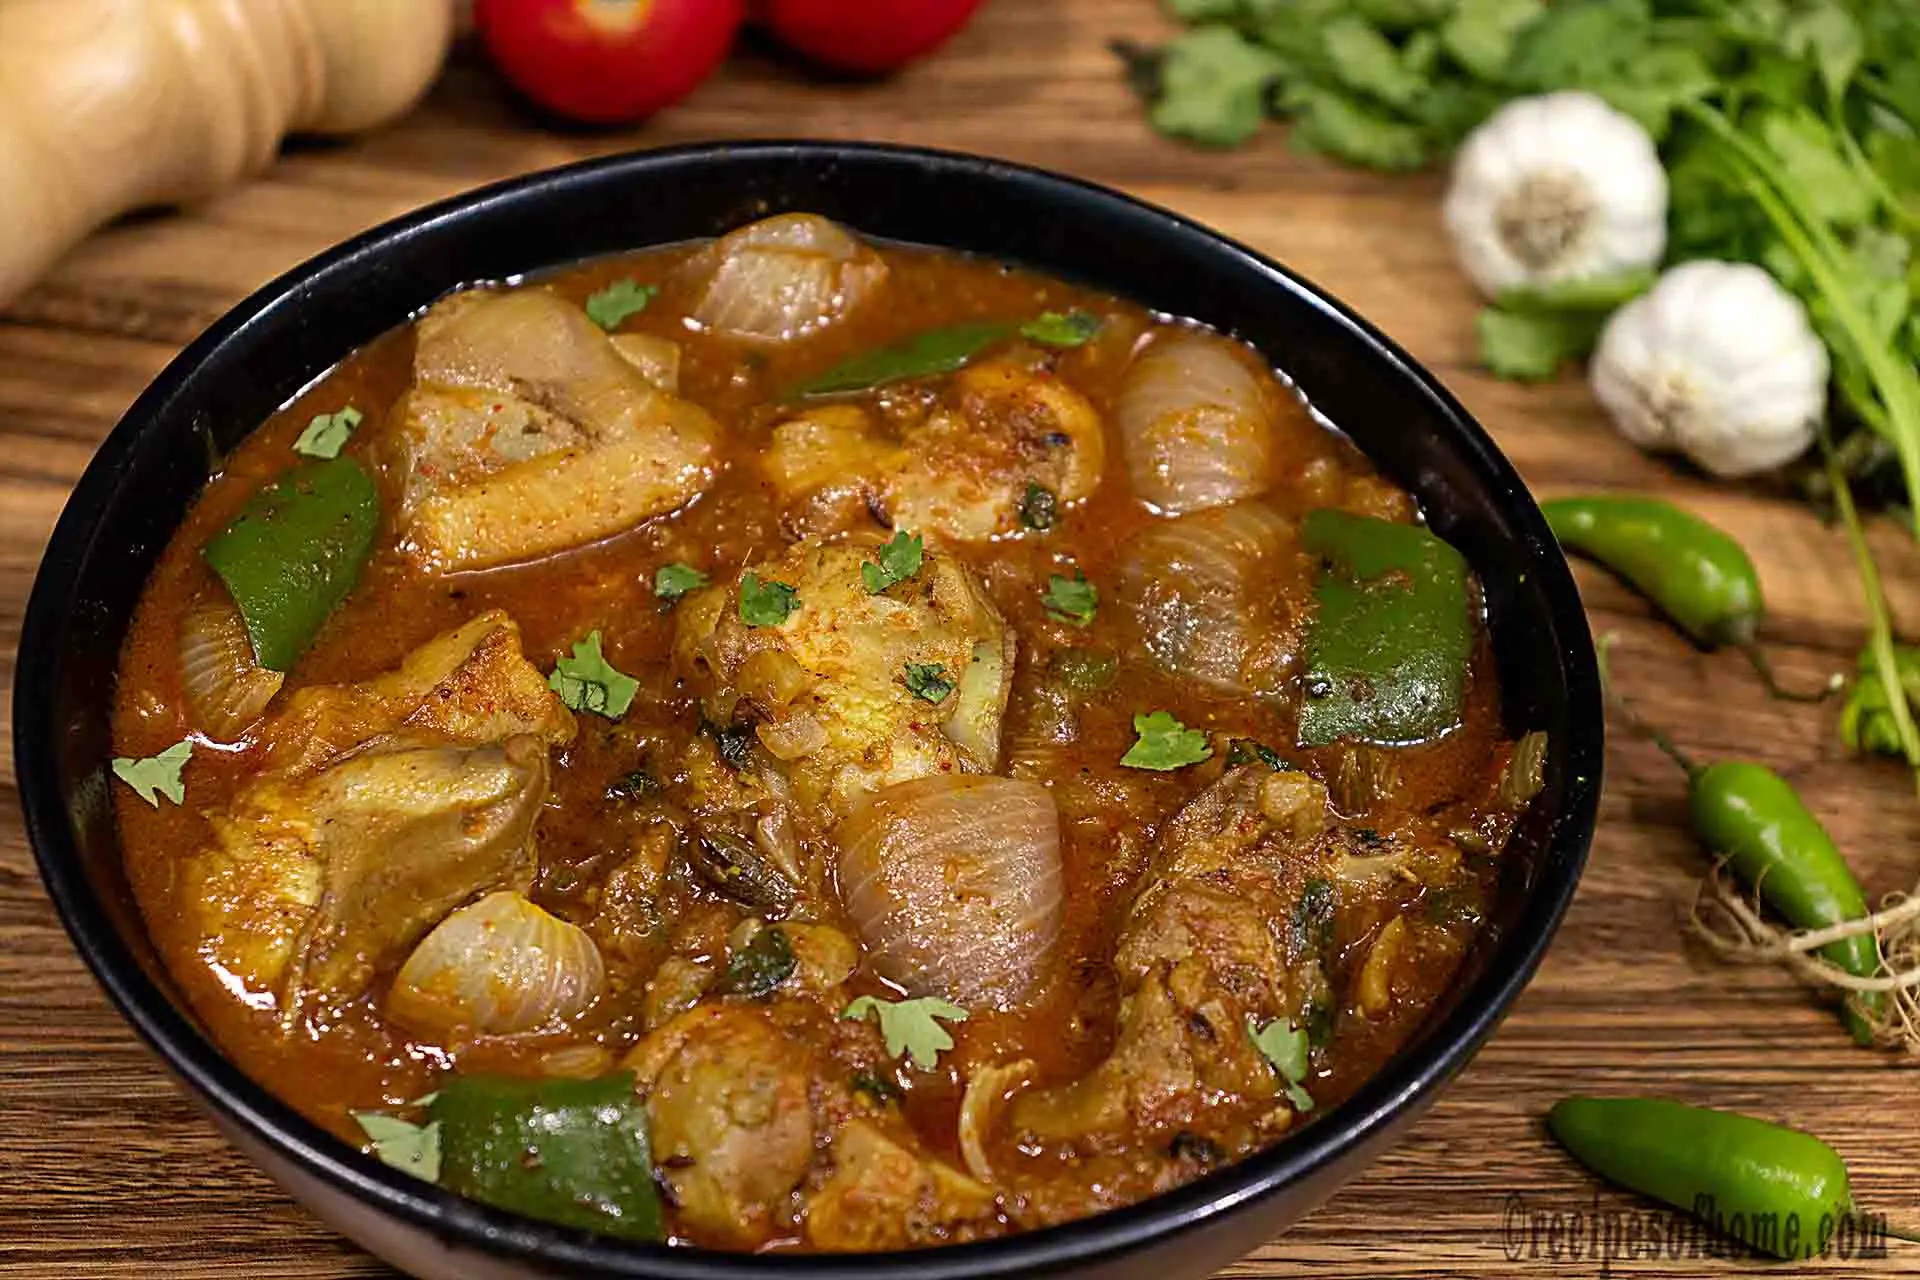 Kadai chicken recipe | Chicken karahi recipe | How to make kadai chicken